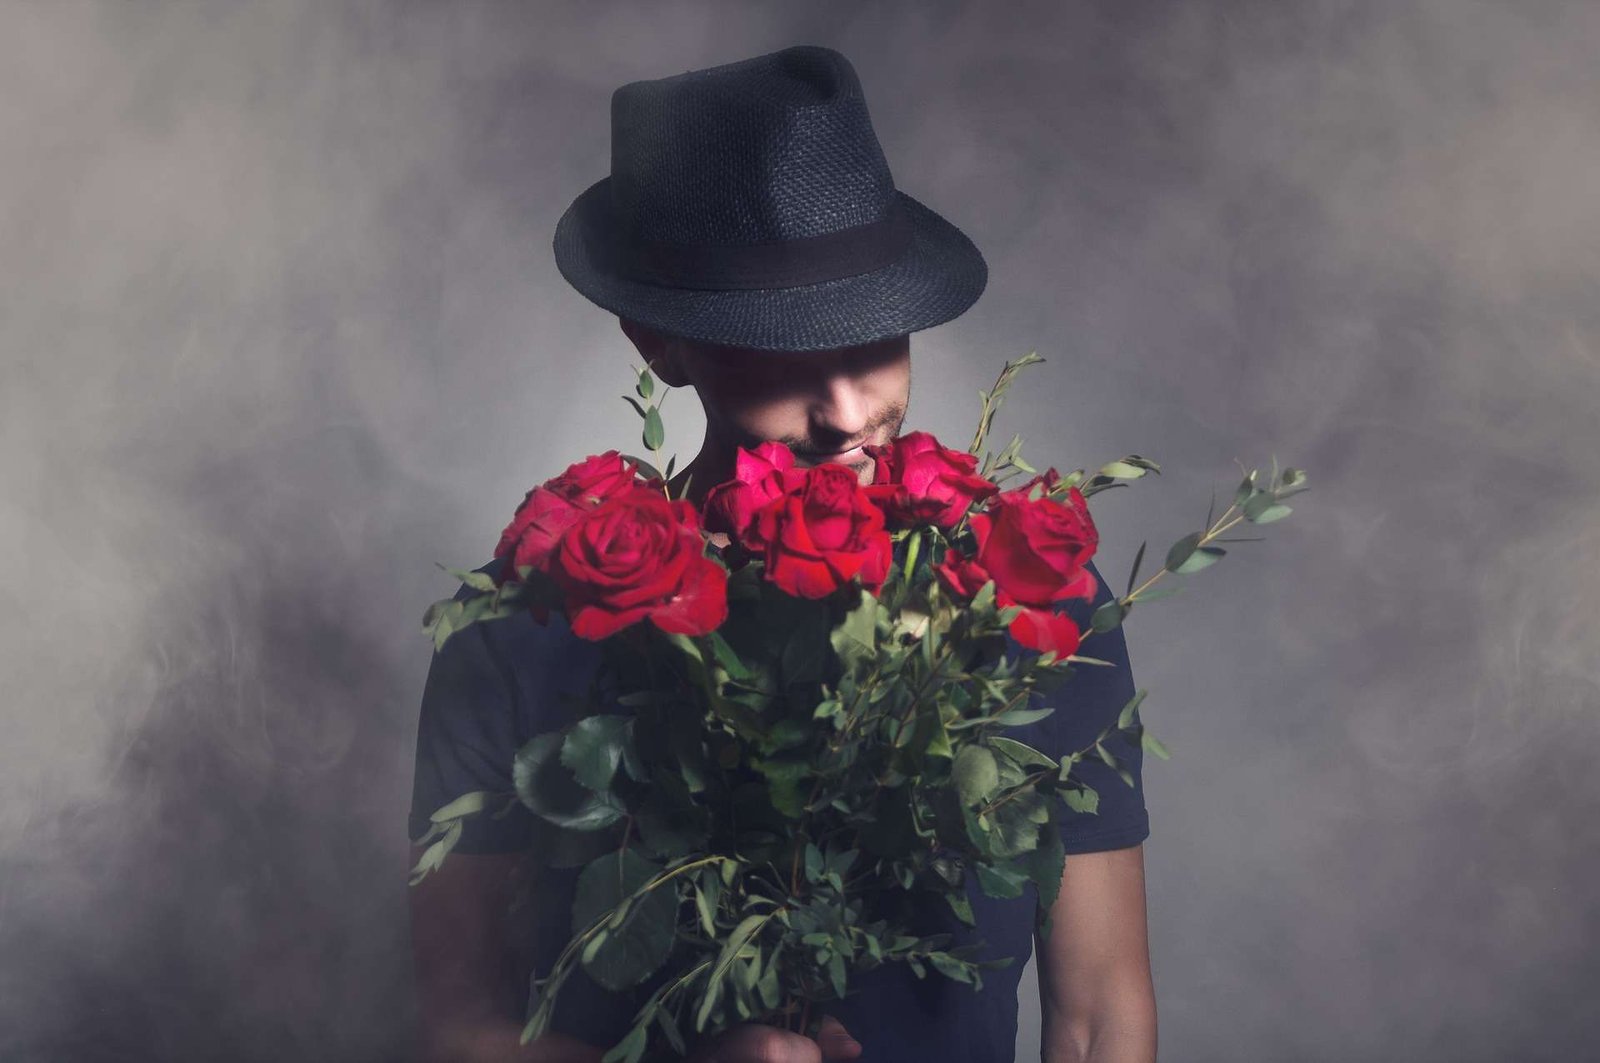 Homem com um chapéu preto segurando um buquê de rosas vermelhas